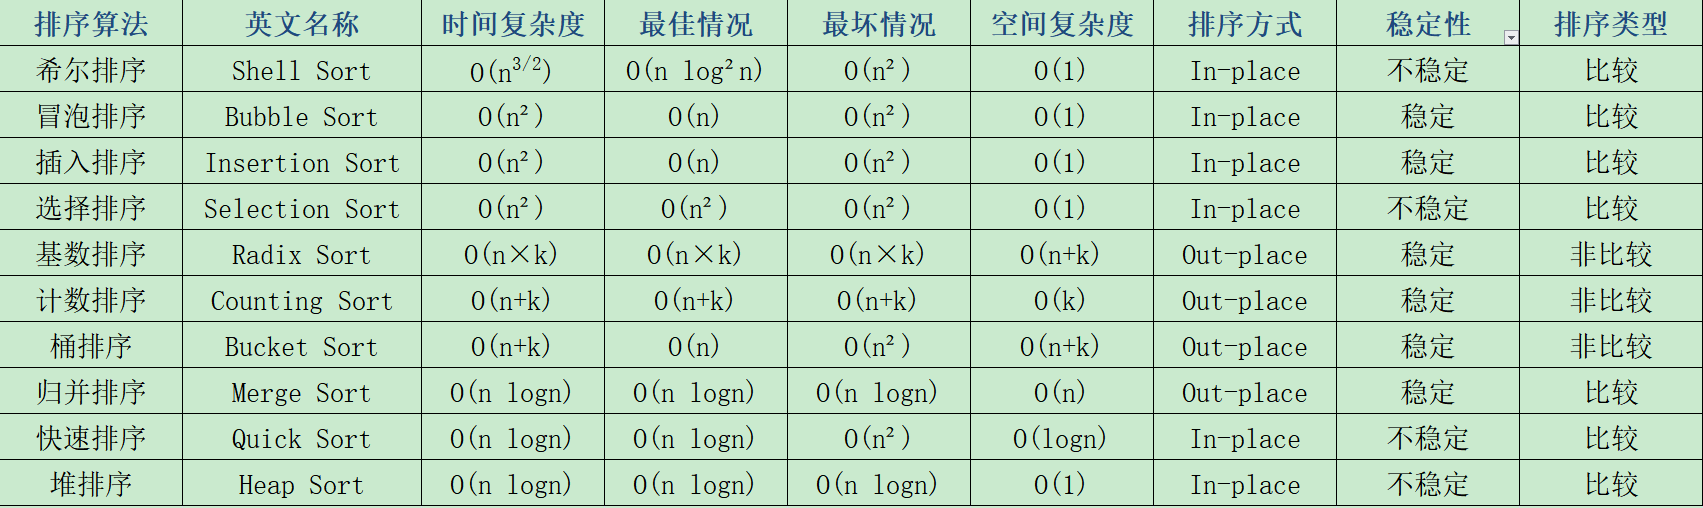 十大常用经典排序算法总结图_10大经典排序算法